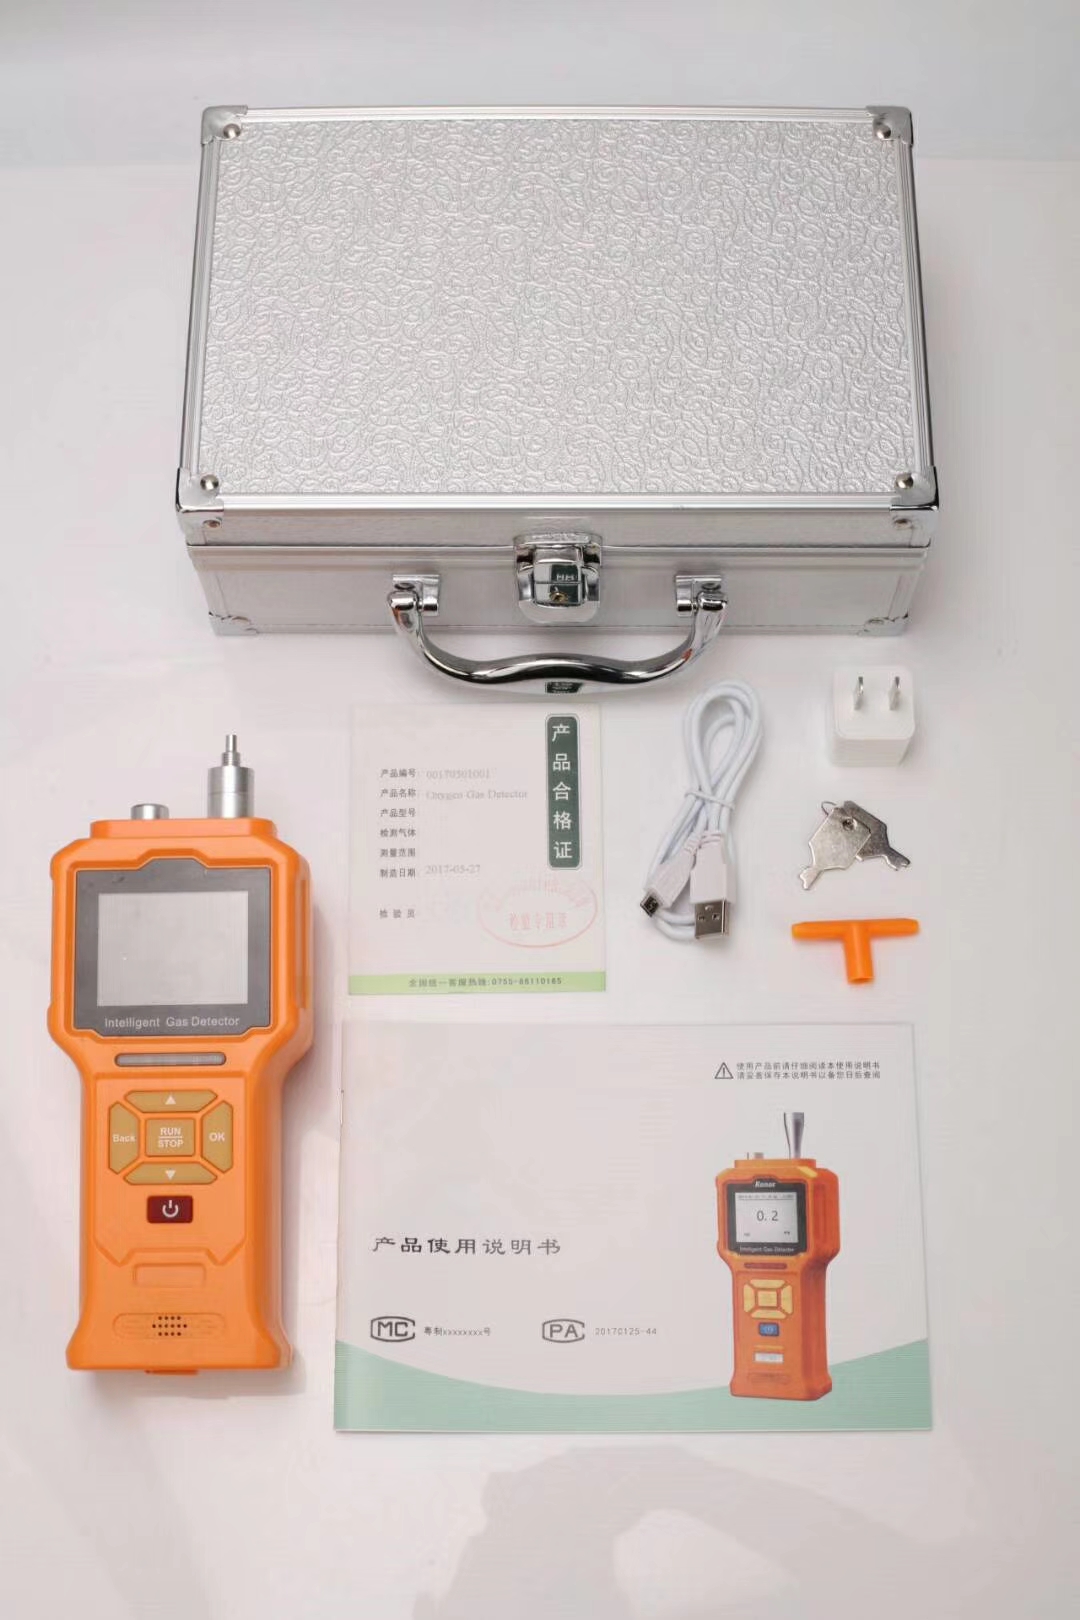 固定式和便携式的气体检测仪有什么区别？